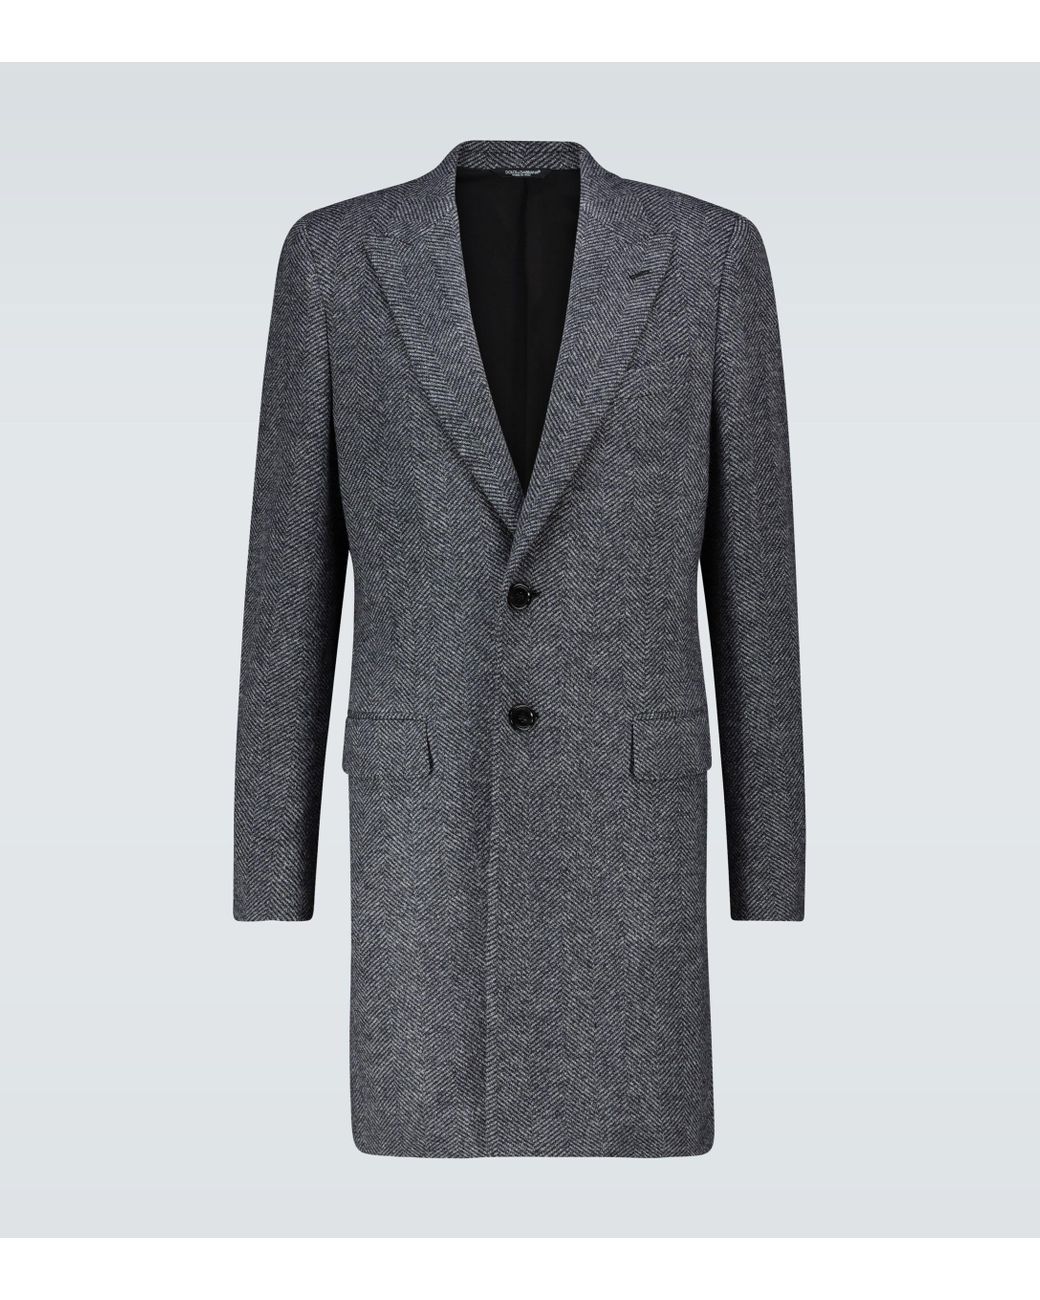 Dolce & Gabbana Wool Fantasia Chevron Coat for Men | Lyst Australia